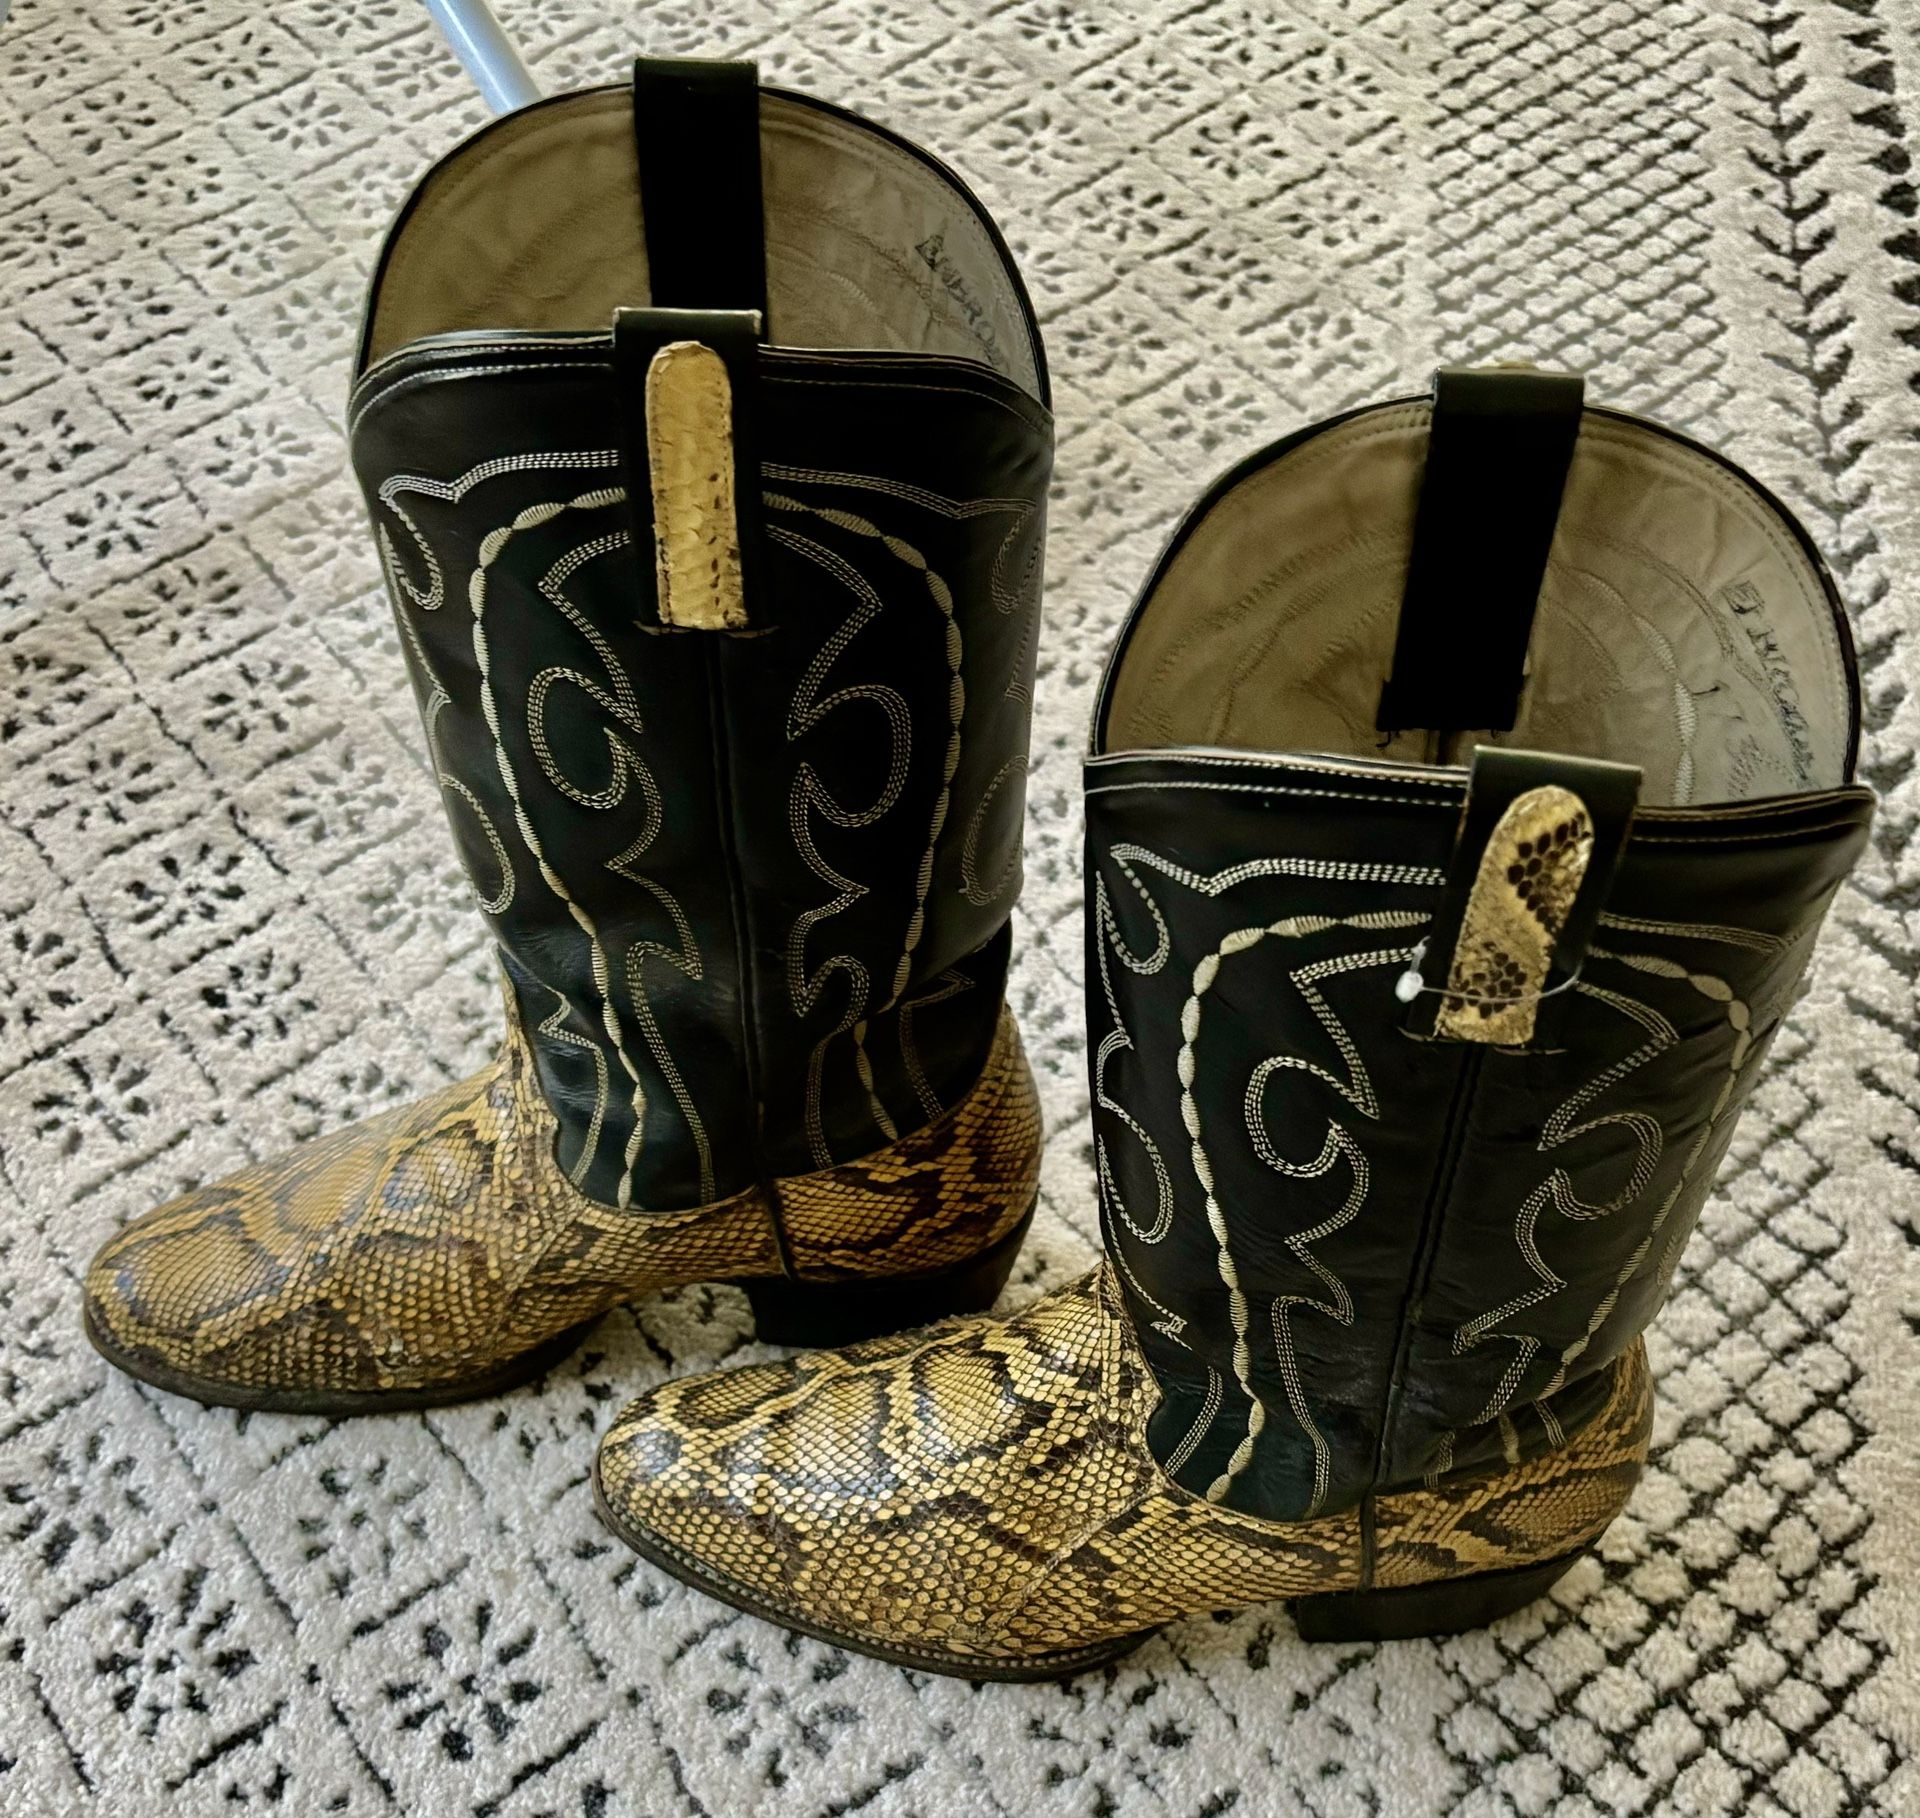 Snake Skin Boots - Vintage